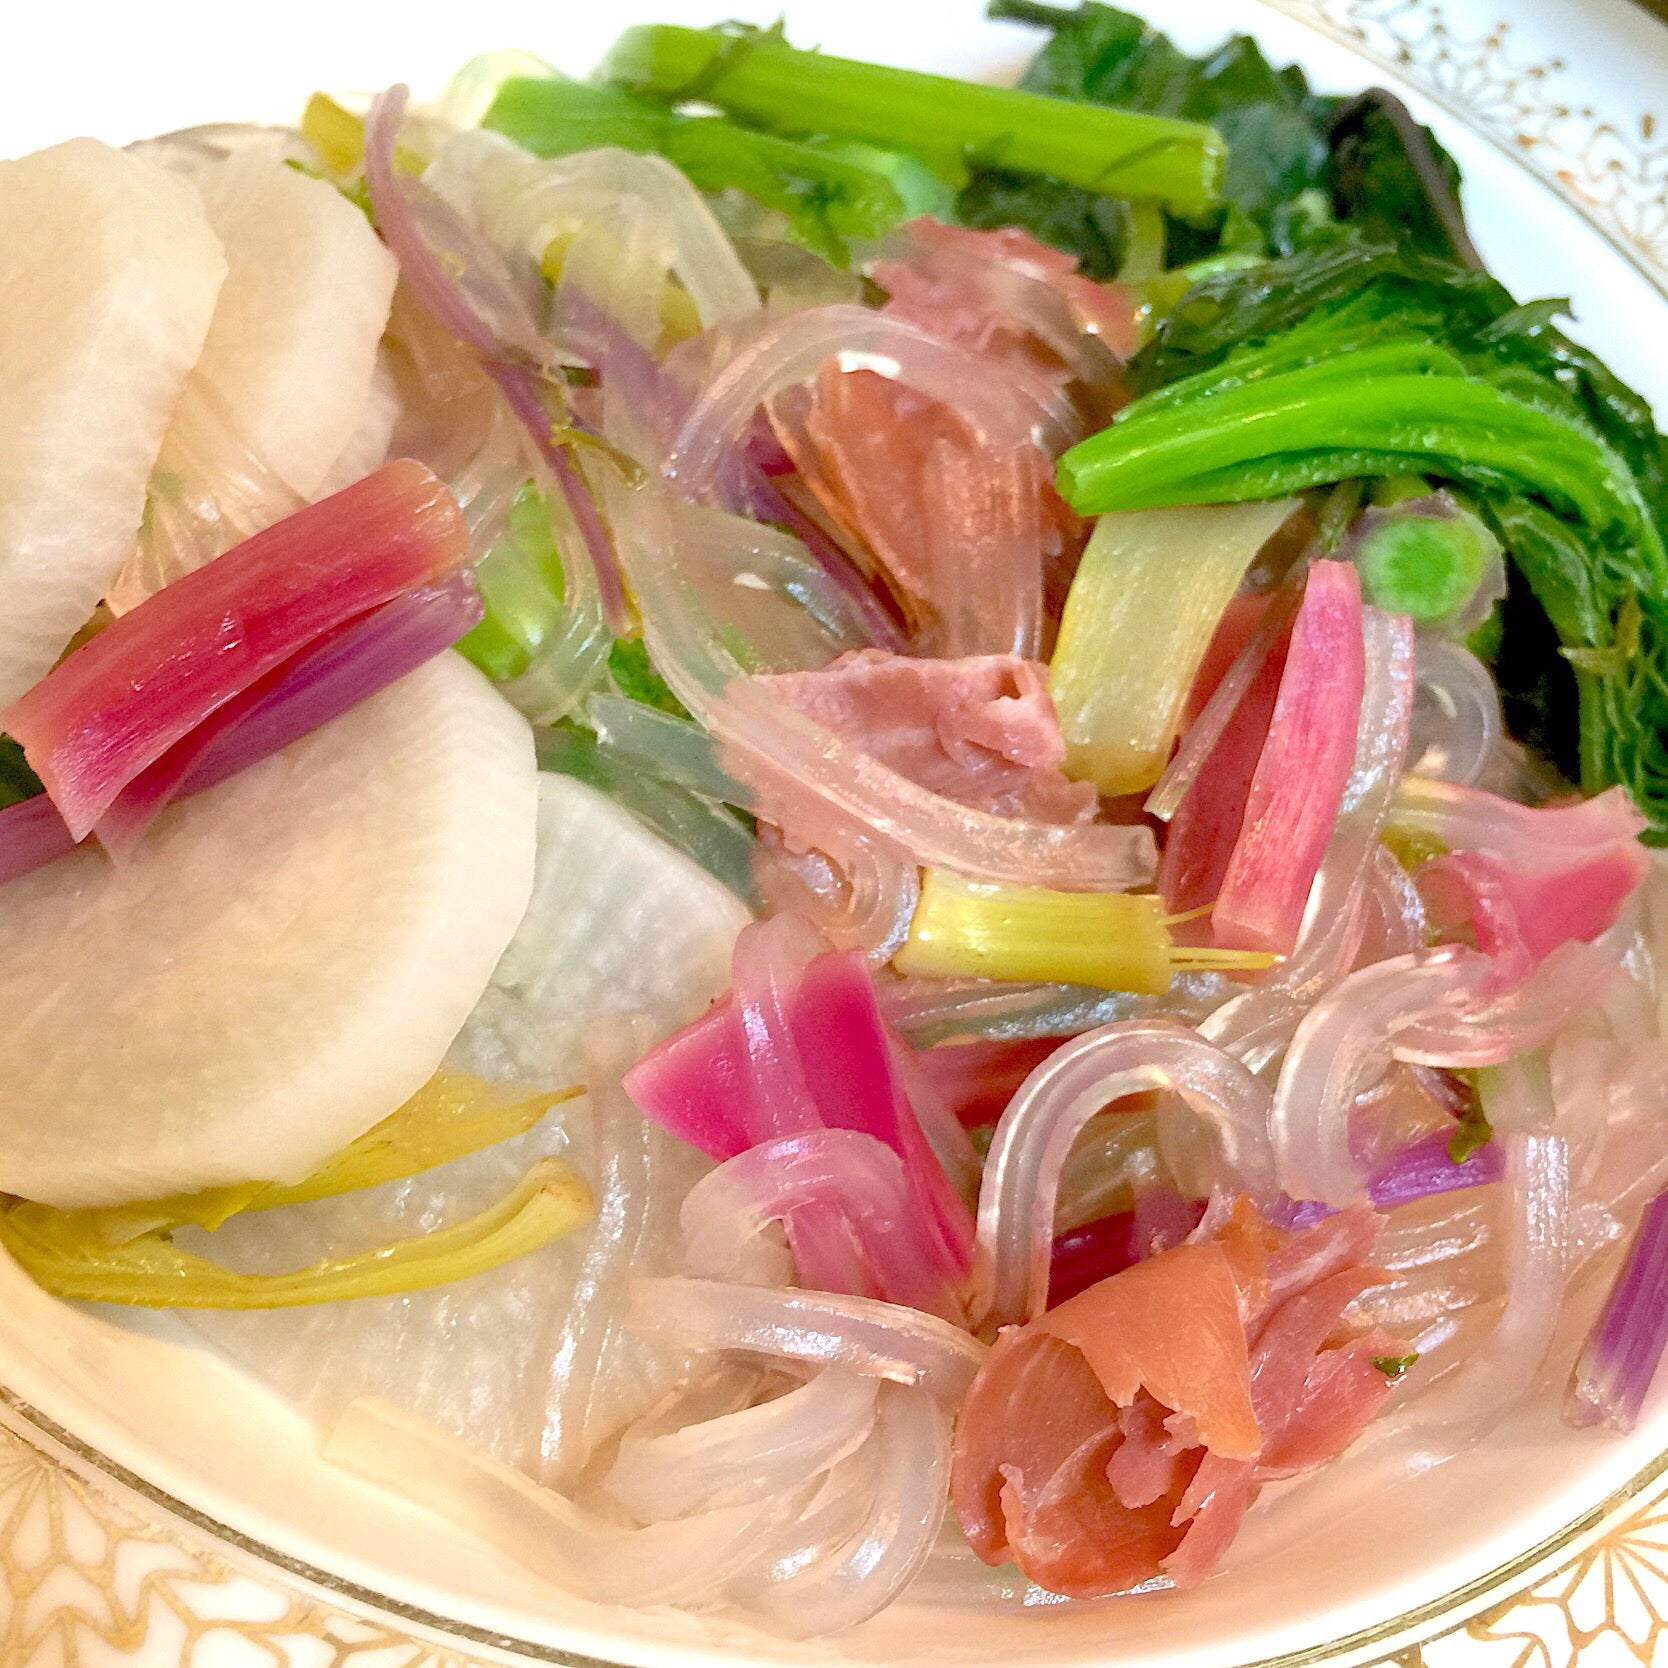 〆は生マロニー
オーガニック野菜のプロシュート鍋 SnapDish 料理カメラ